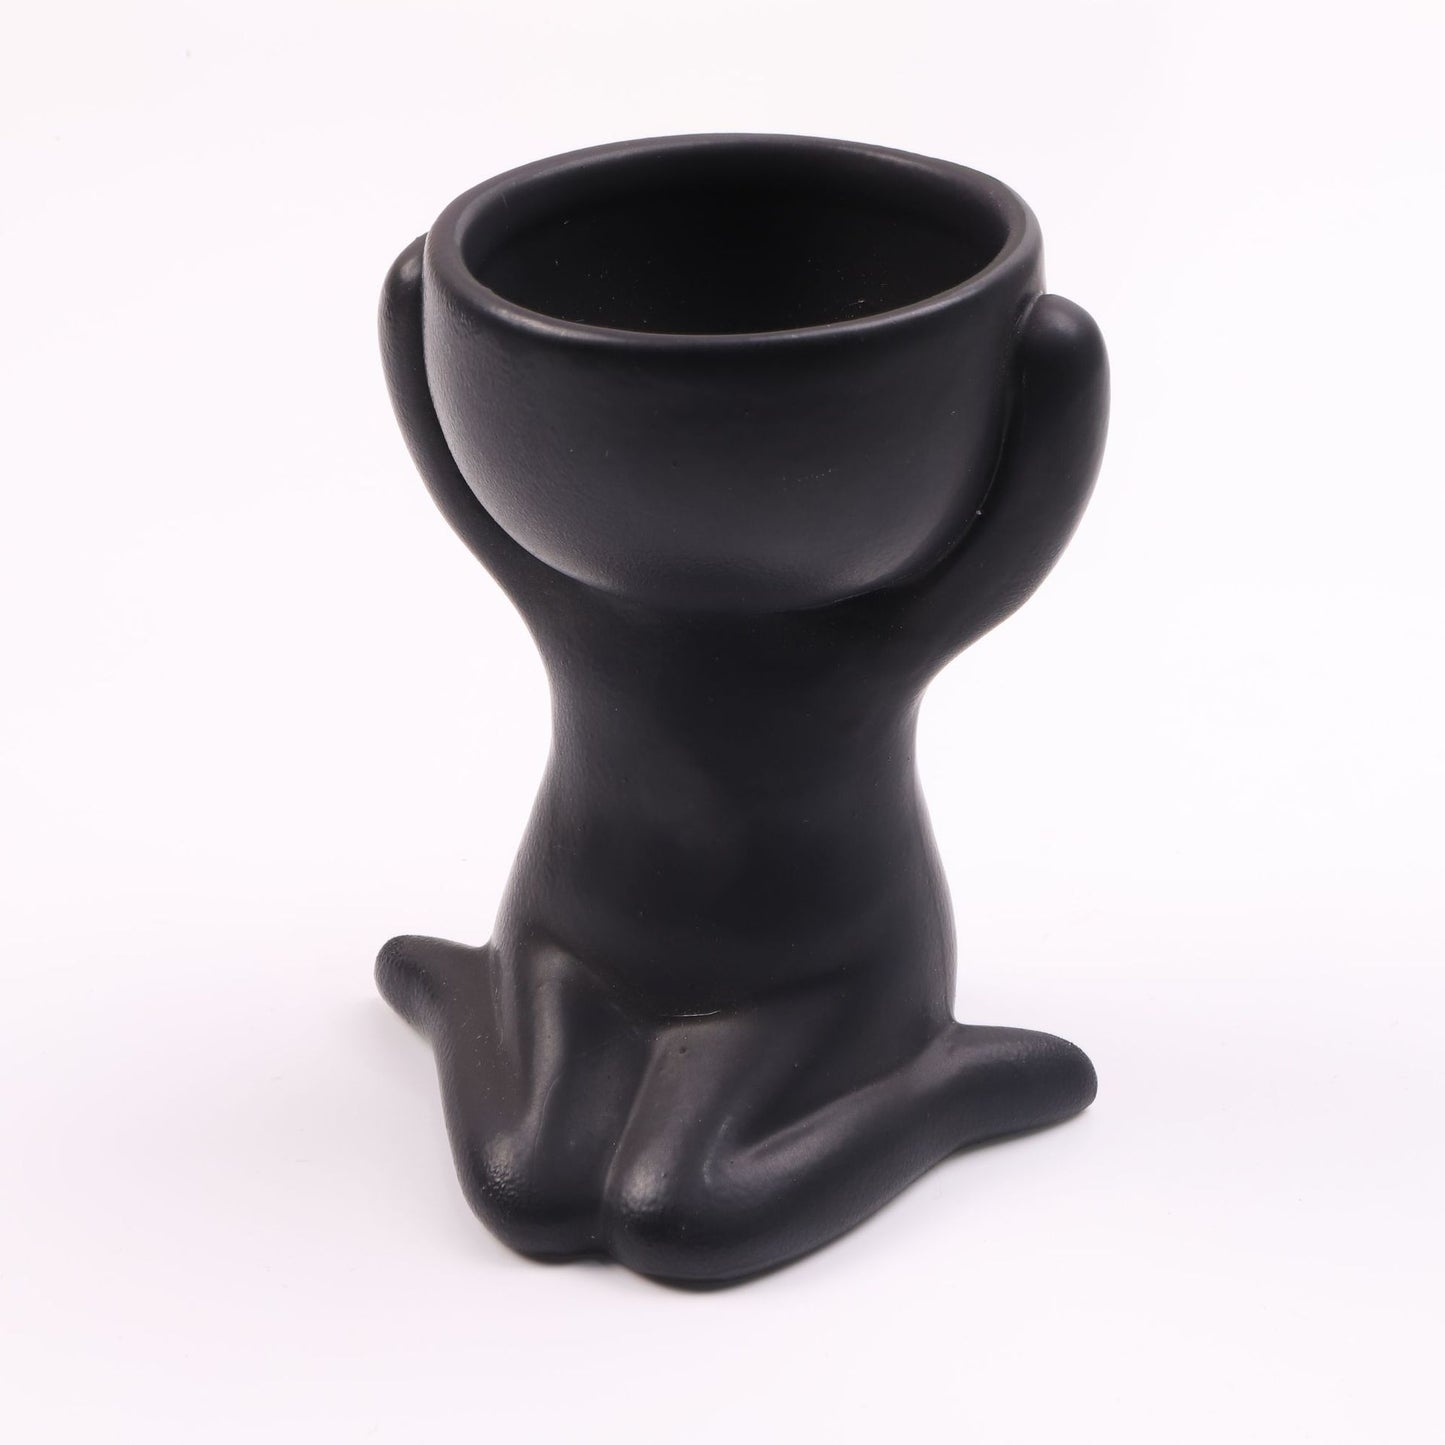 Humanoid ceramic flower pot